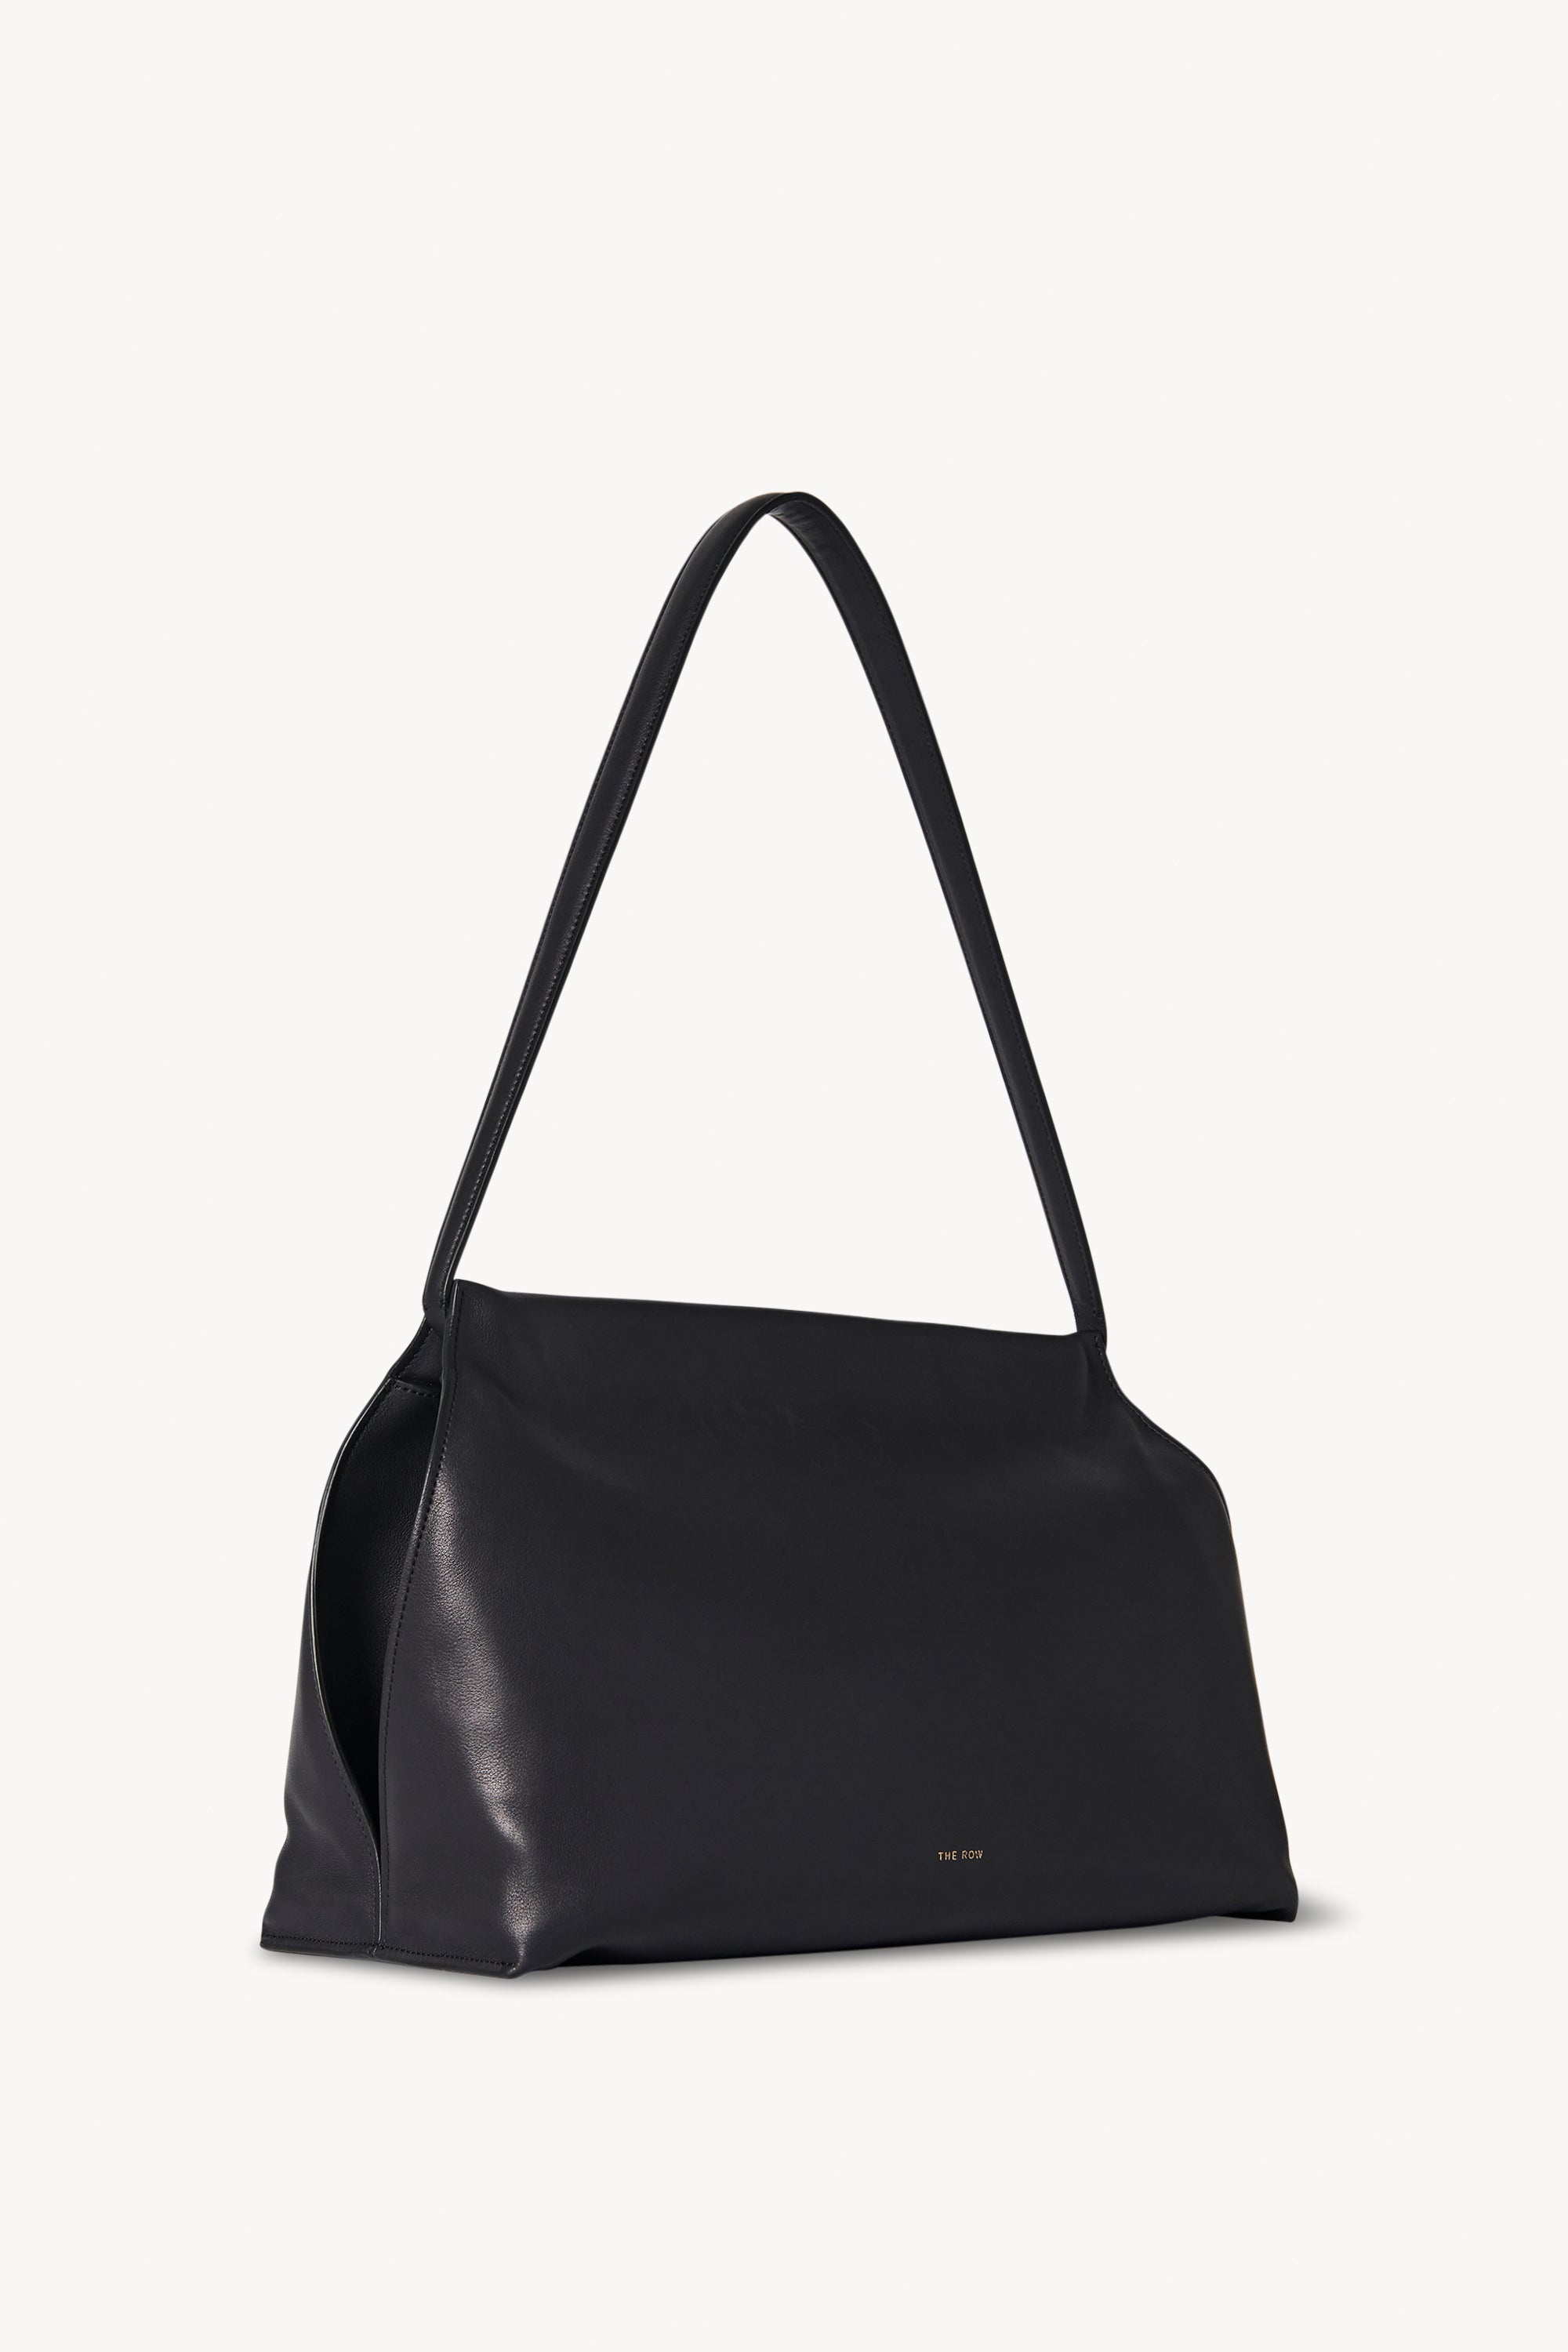 Sienna Shoulder Bag in Leather - 2